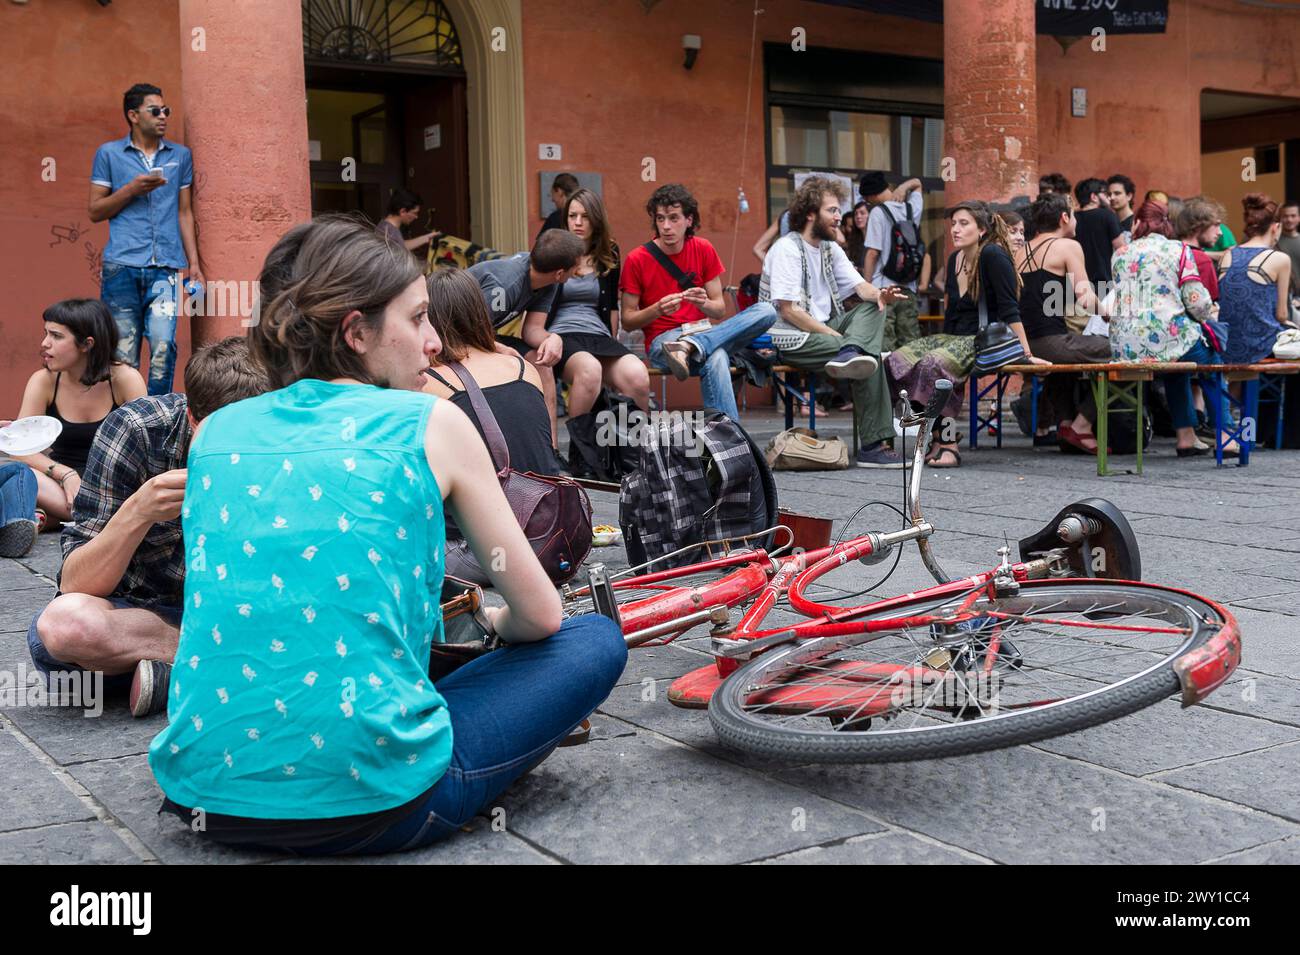 Vie estudiantine a Bologna - seduti su un terreno quadrato | vita studentesca un Bologna - Assis sur les pavés d'une Place de la cité Foto Stock